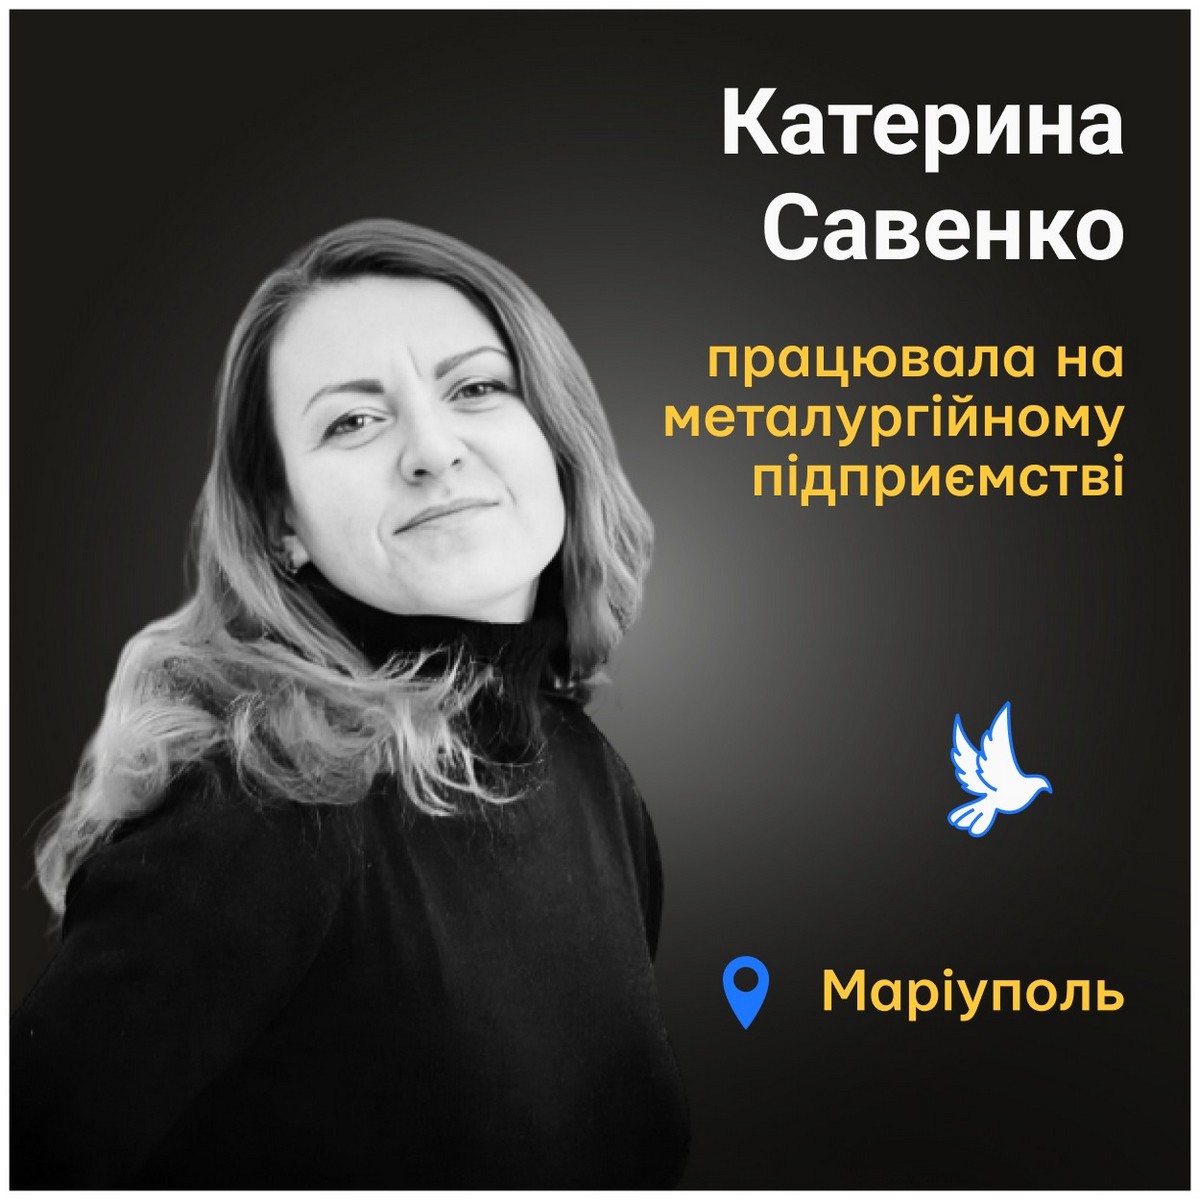 Вбиті росією: Катерина Савенко